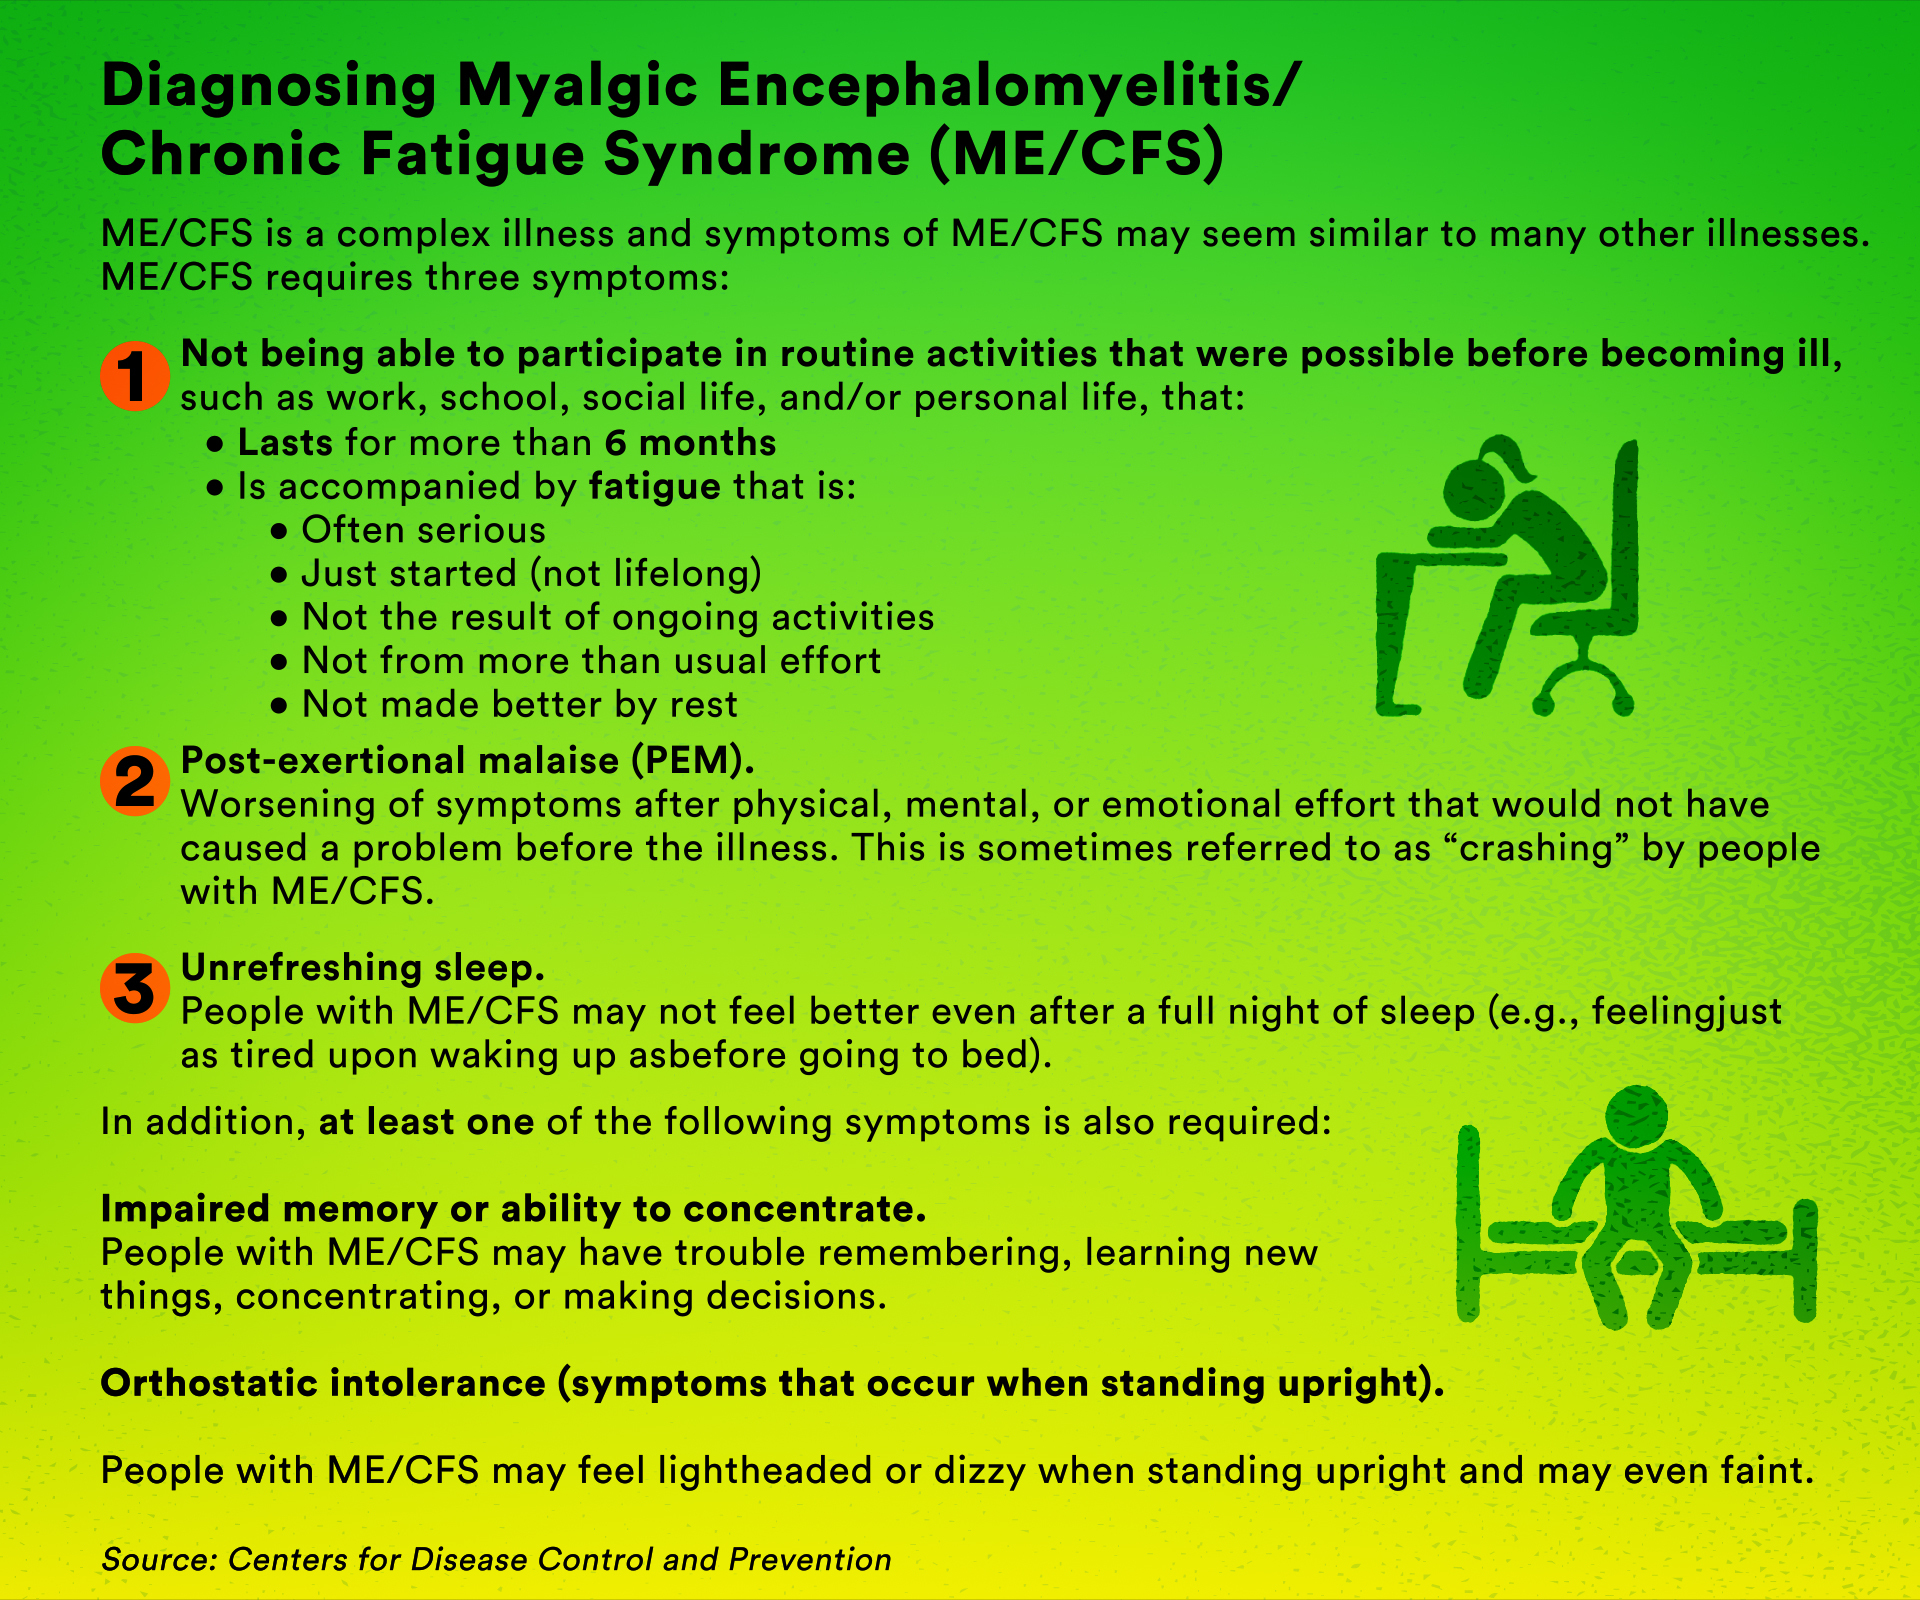 Diagnosing Myalgic Encephalomyelitis/Chronic Fatigue Syndrome.